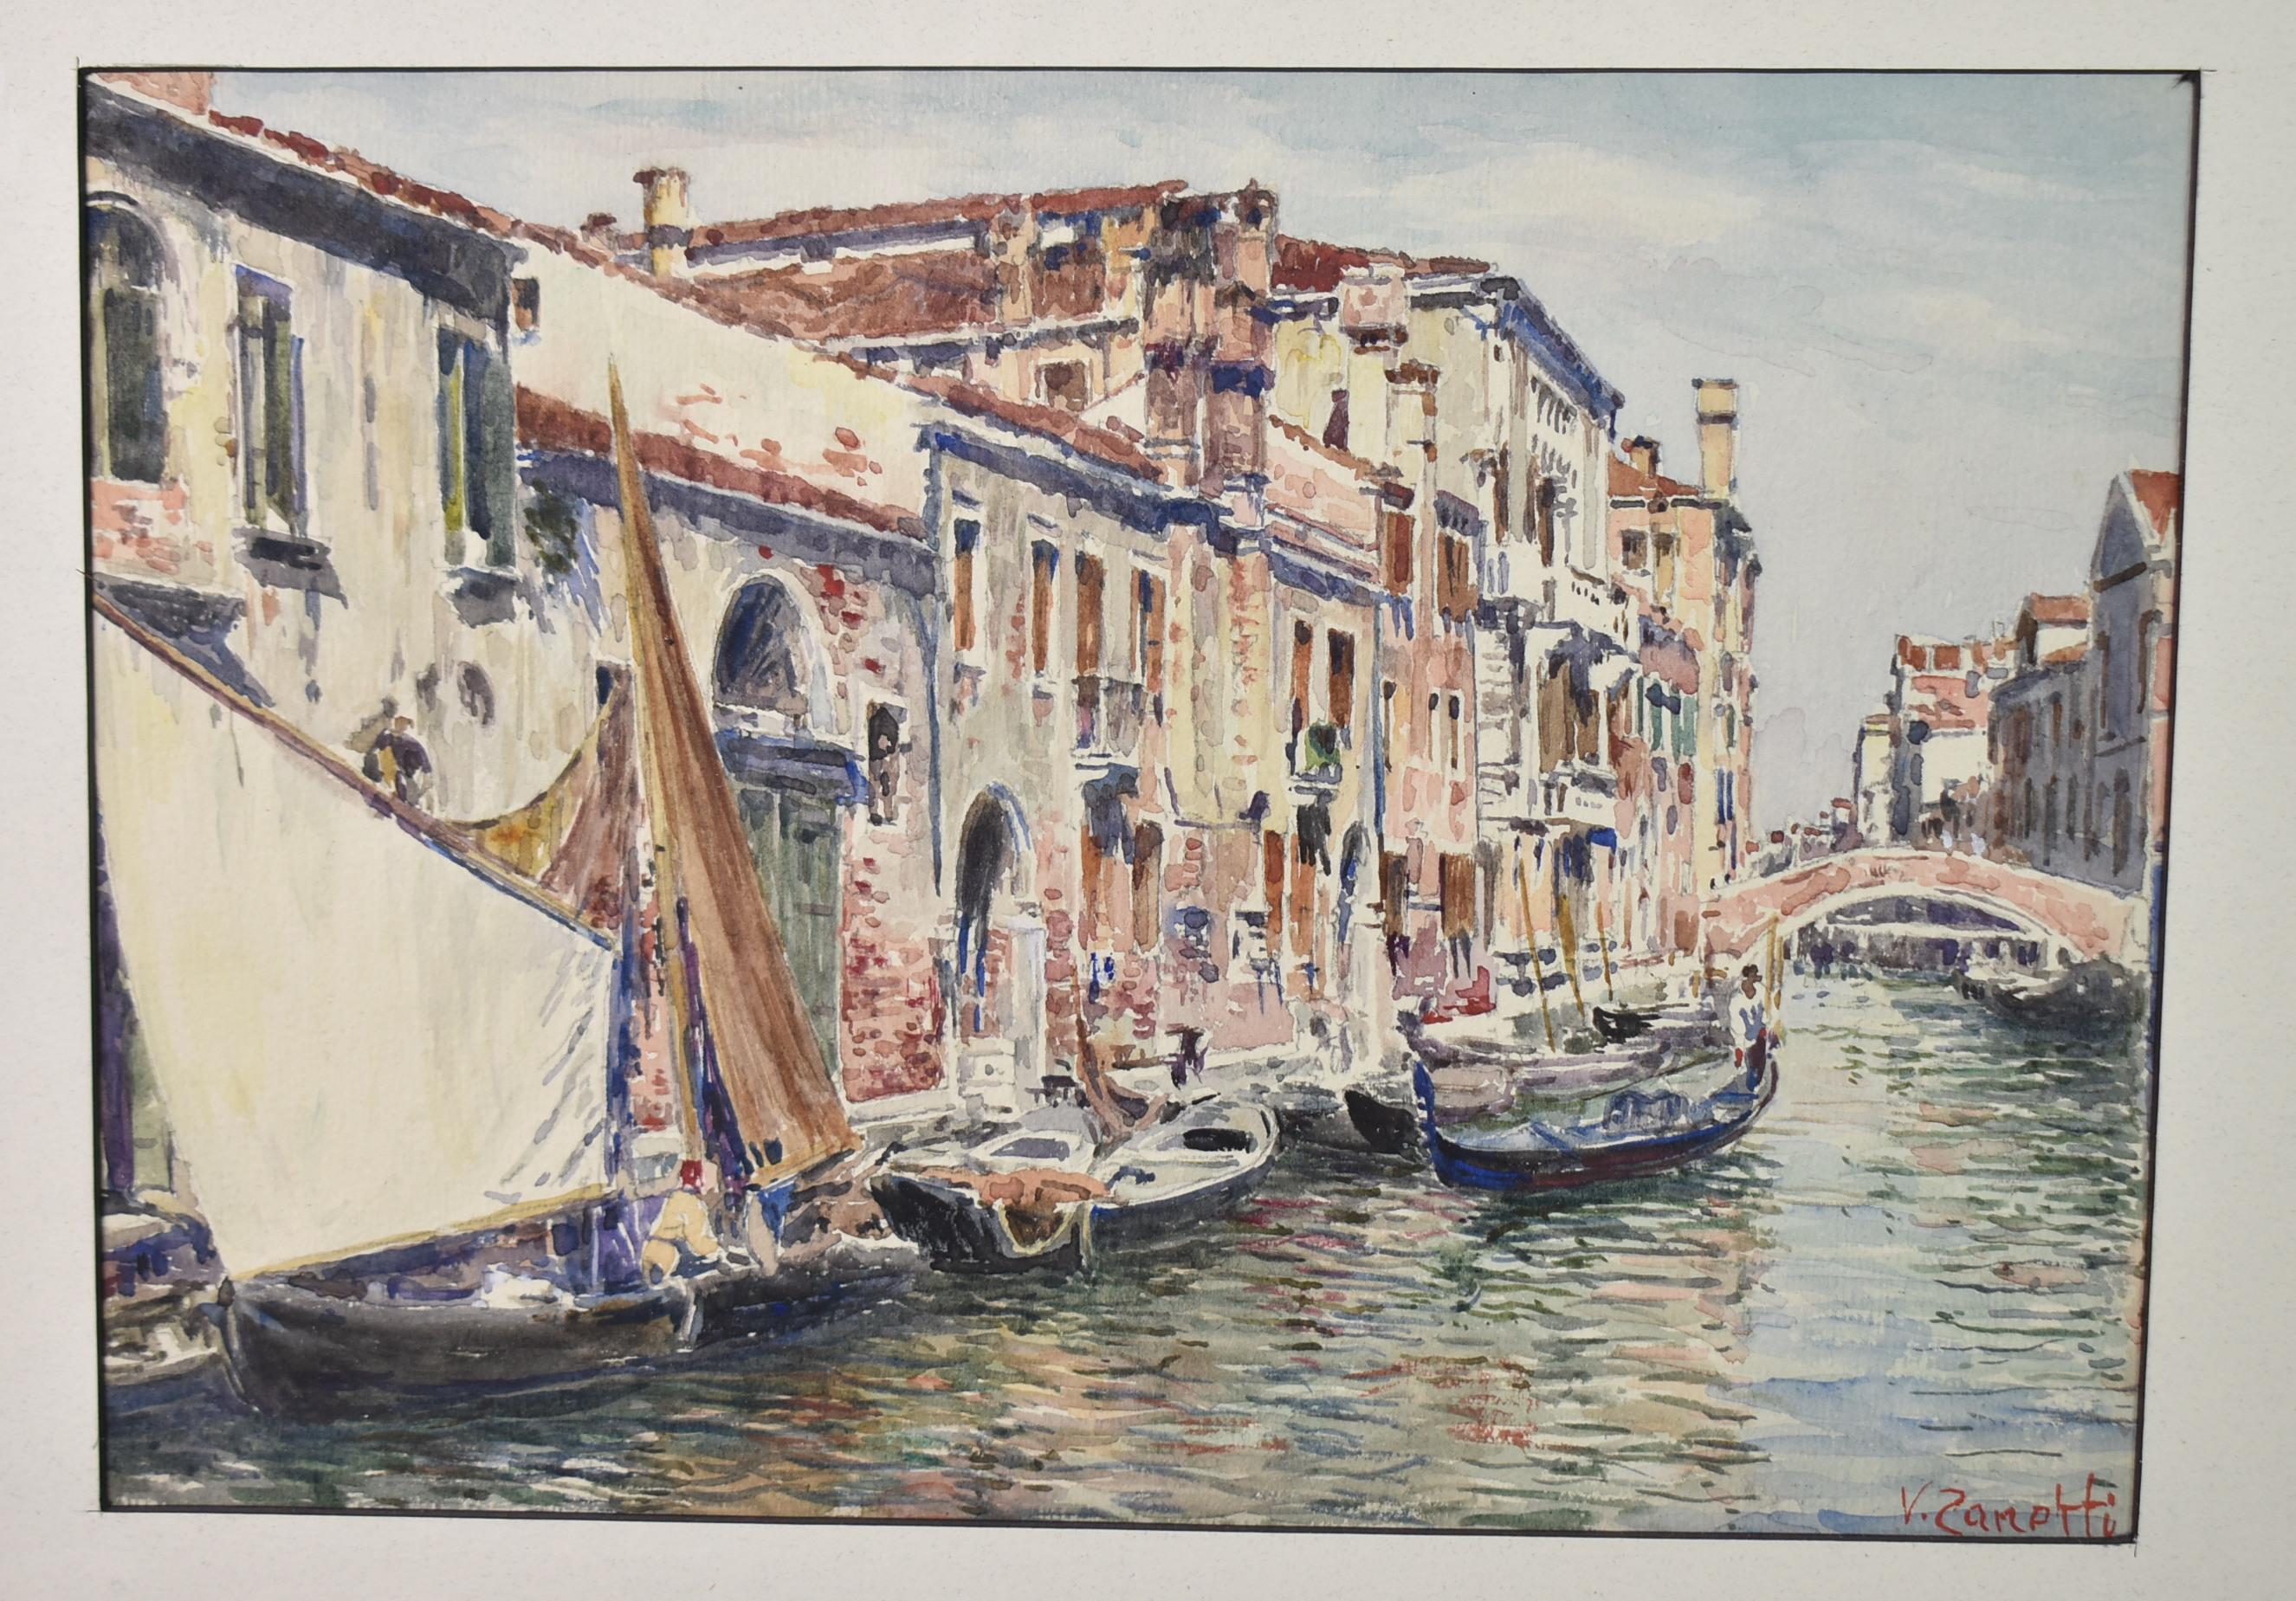 Italienisches Aquarell mit Kanalszene von Vettore Zanetti (1964-1946), signiert unten links, um 1890-1910. Zanetti nahm an internationalen Ausstellungen teil, insbesondere an der Kunstausstellung in Venedig seit ihrer Gründung im Jahr 1895. Er